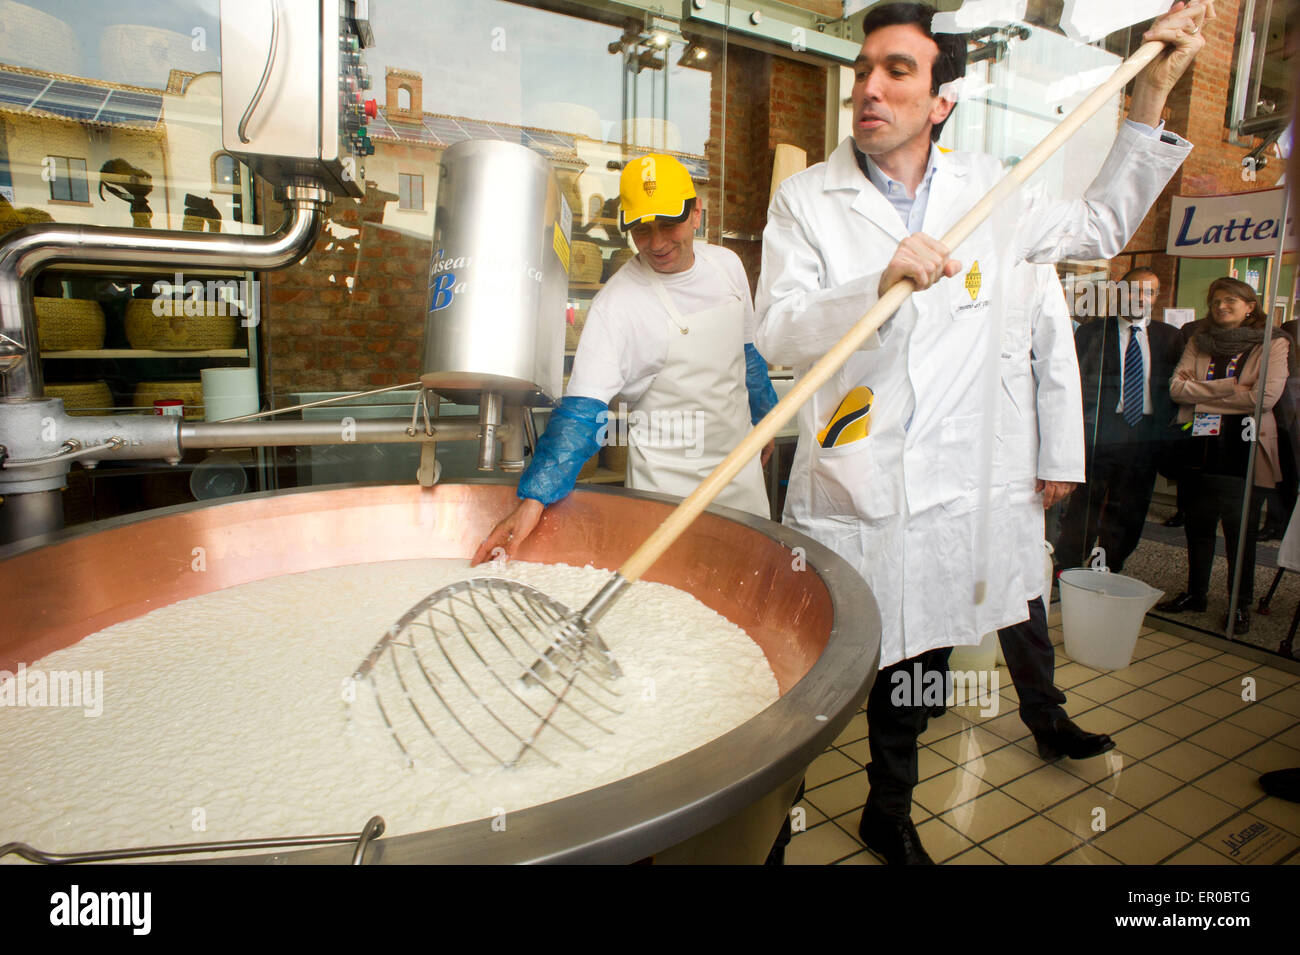 Italia Milán Expo 2015, el Ministro italiano Maurizio Martina colaboraron en la producción de un tipo de queso Grana Padano. Foto de stock